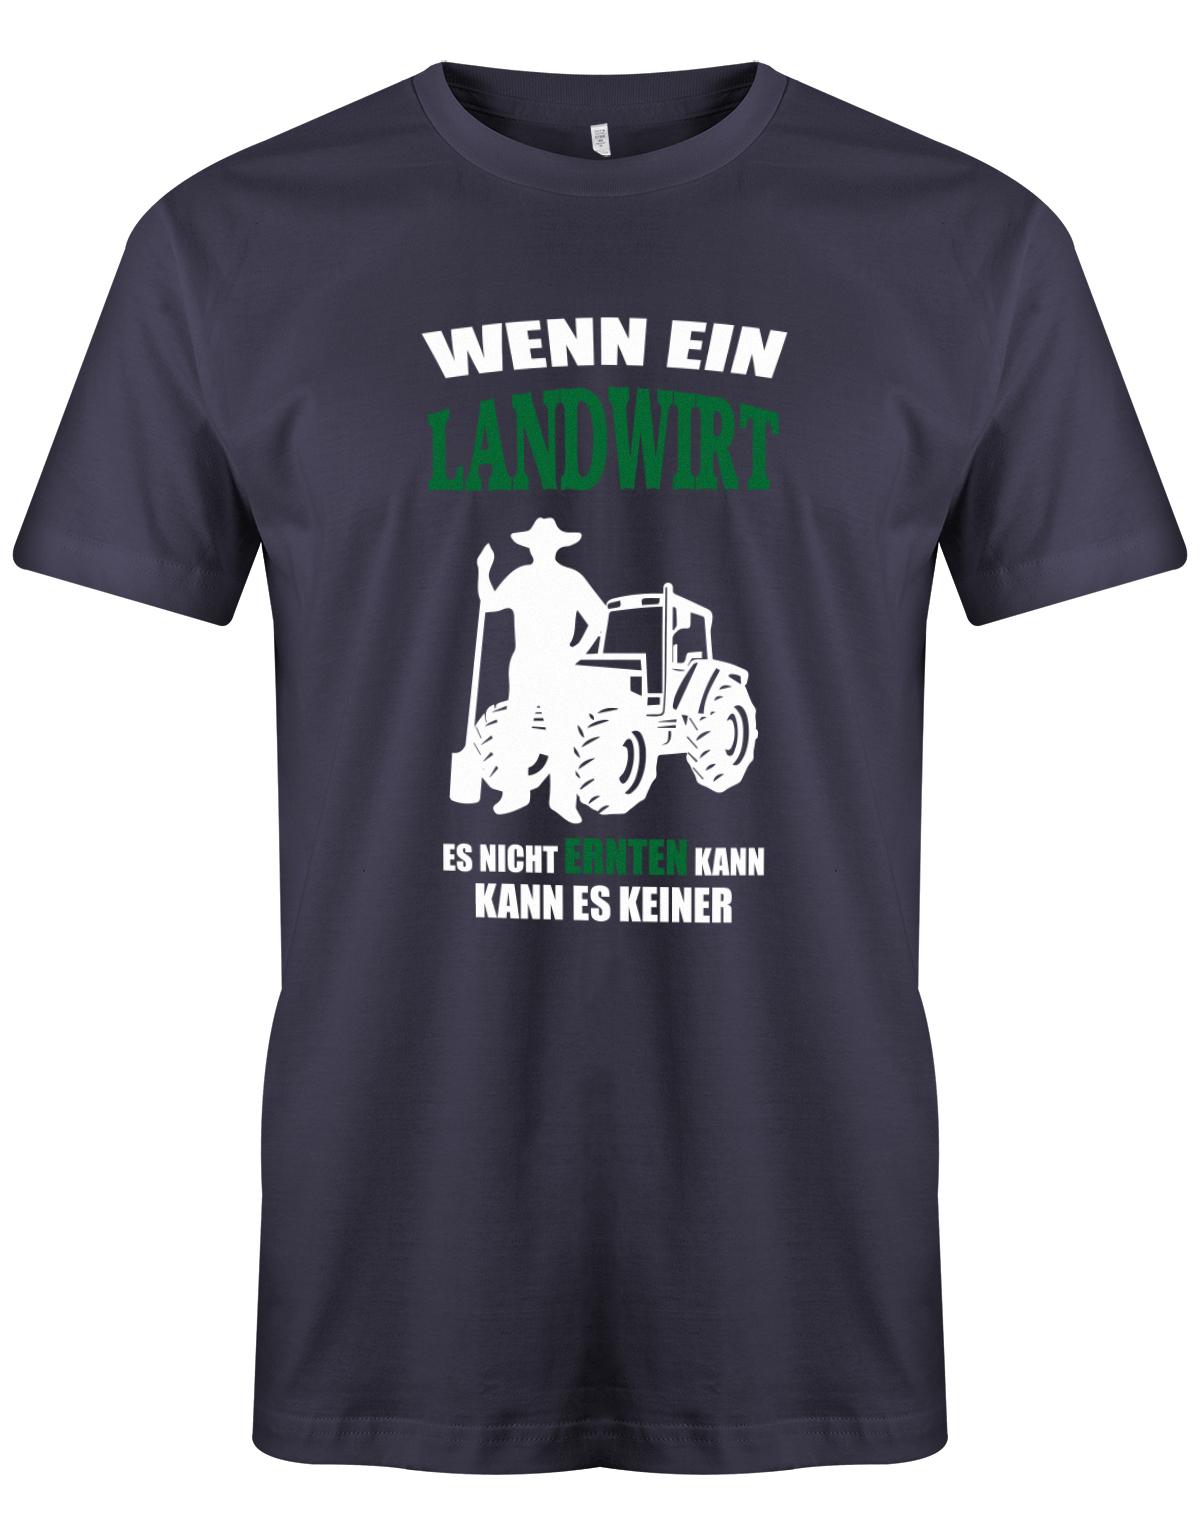 Landwirtschaft Shirt Männer - Wenn ein Landwirt es nicht ernten kann. Kann es keiner Navy